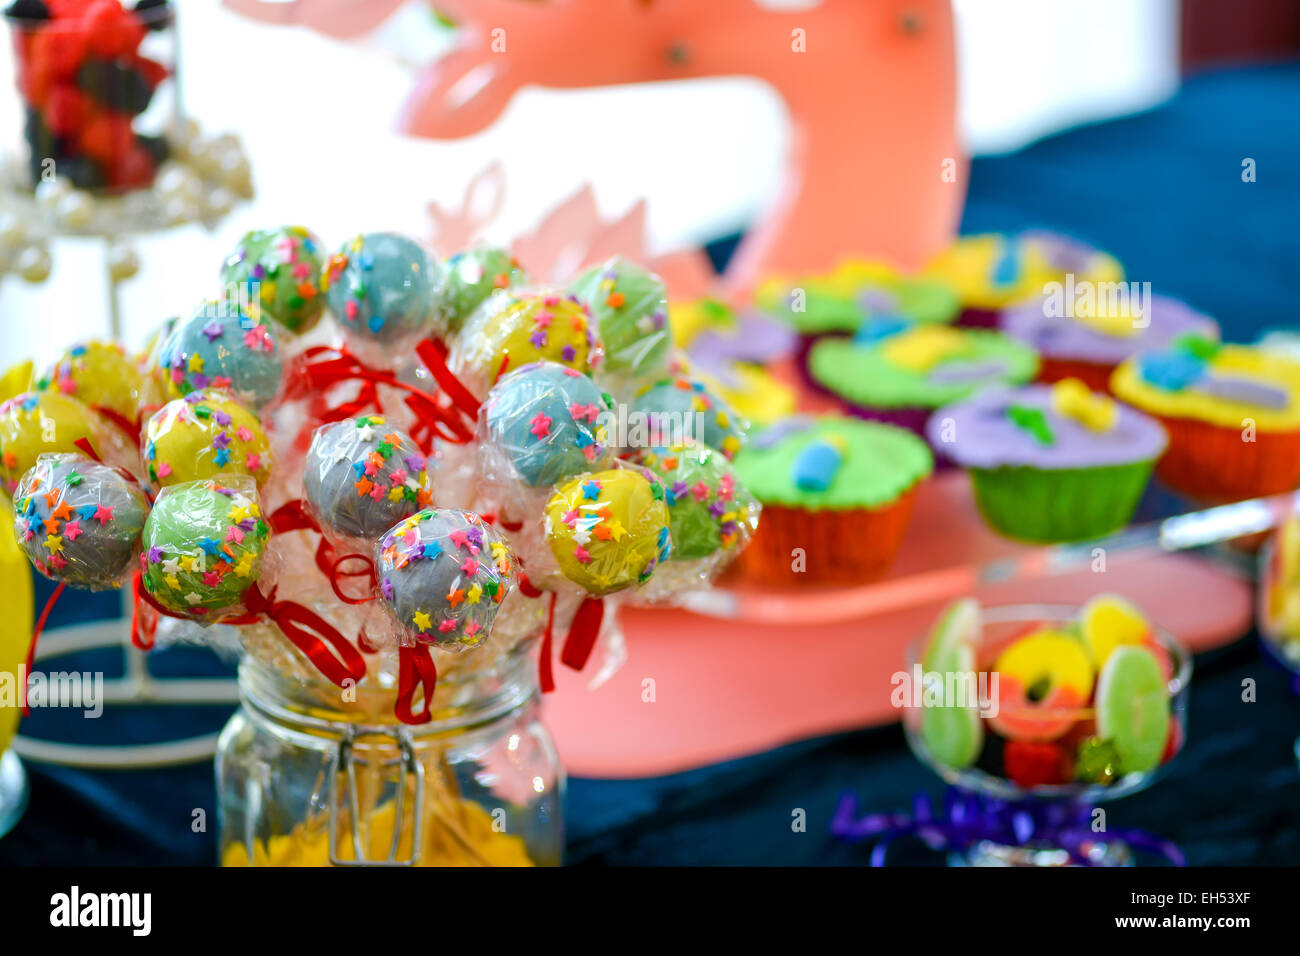 Sucettes colorés placés dans un bocal en verre sur une table pleine de bonbons Banque D'Images